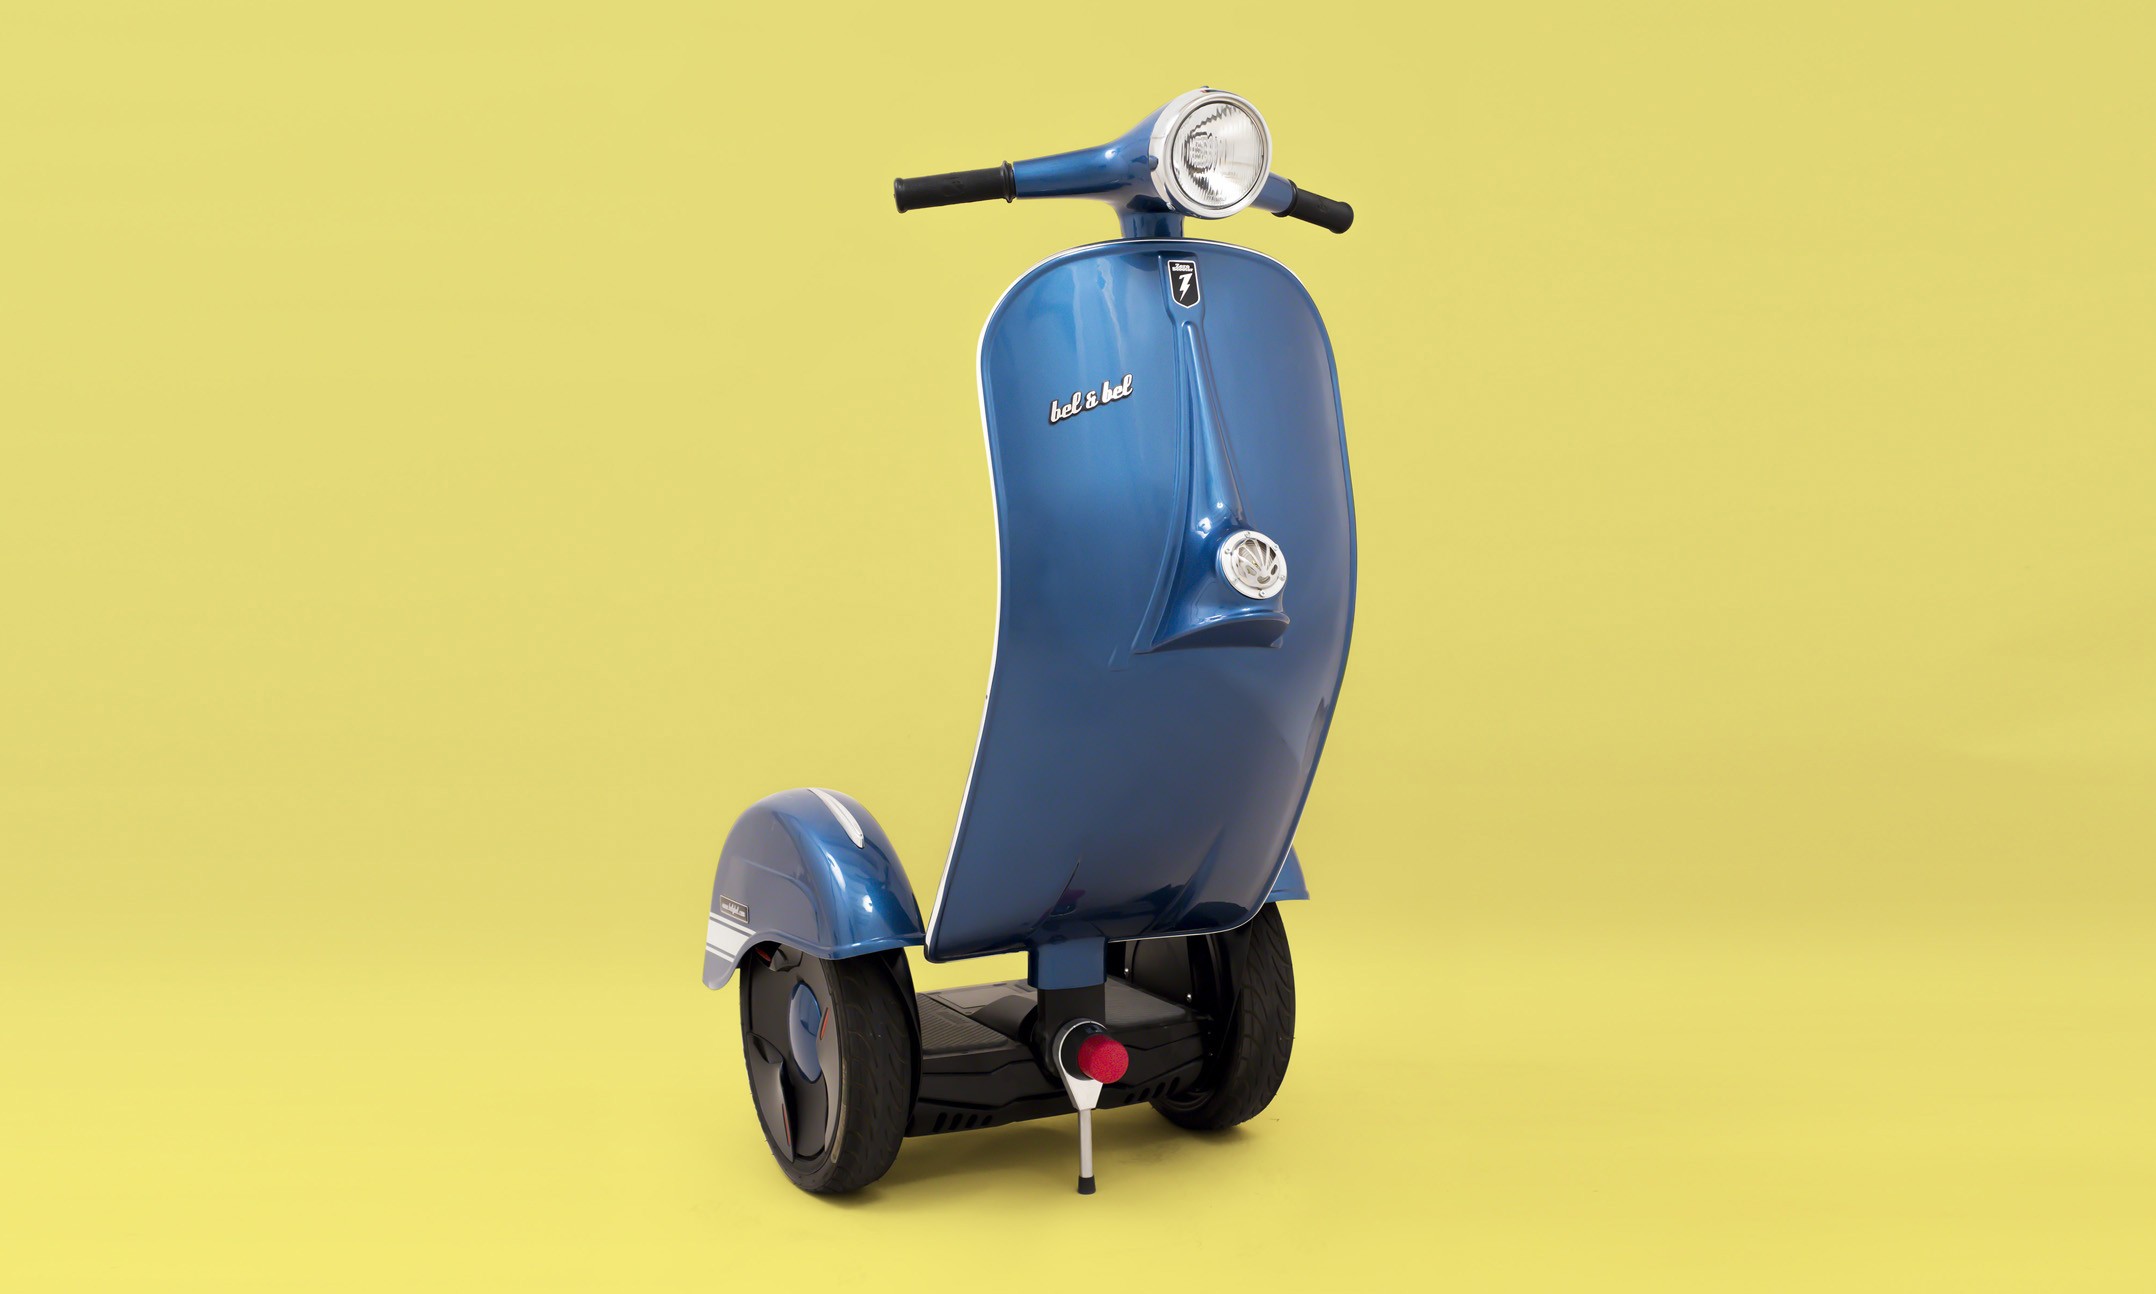 bel & bel 创意设计 zero scooter 平衡车